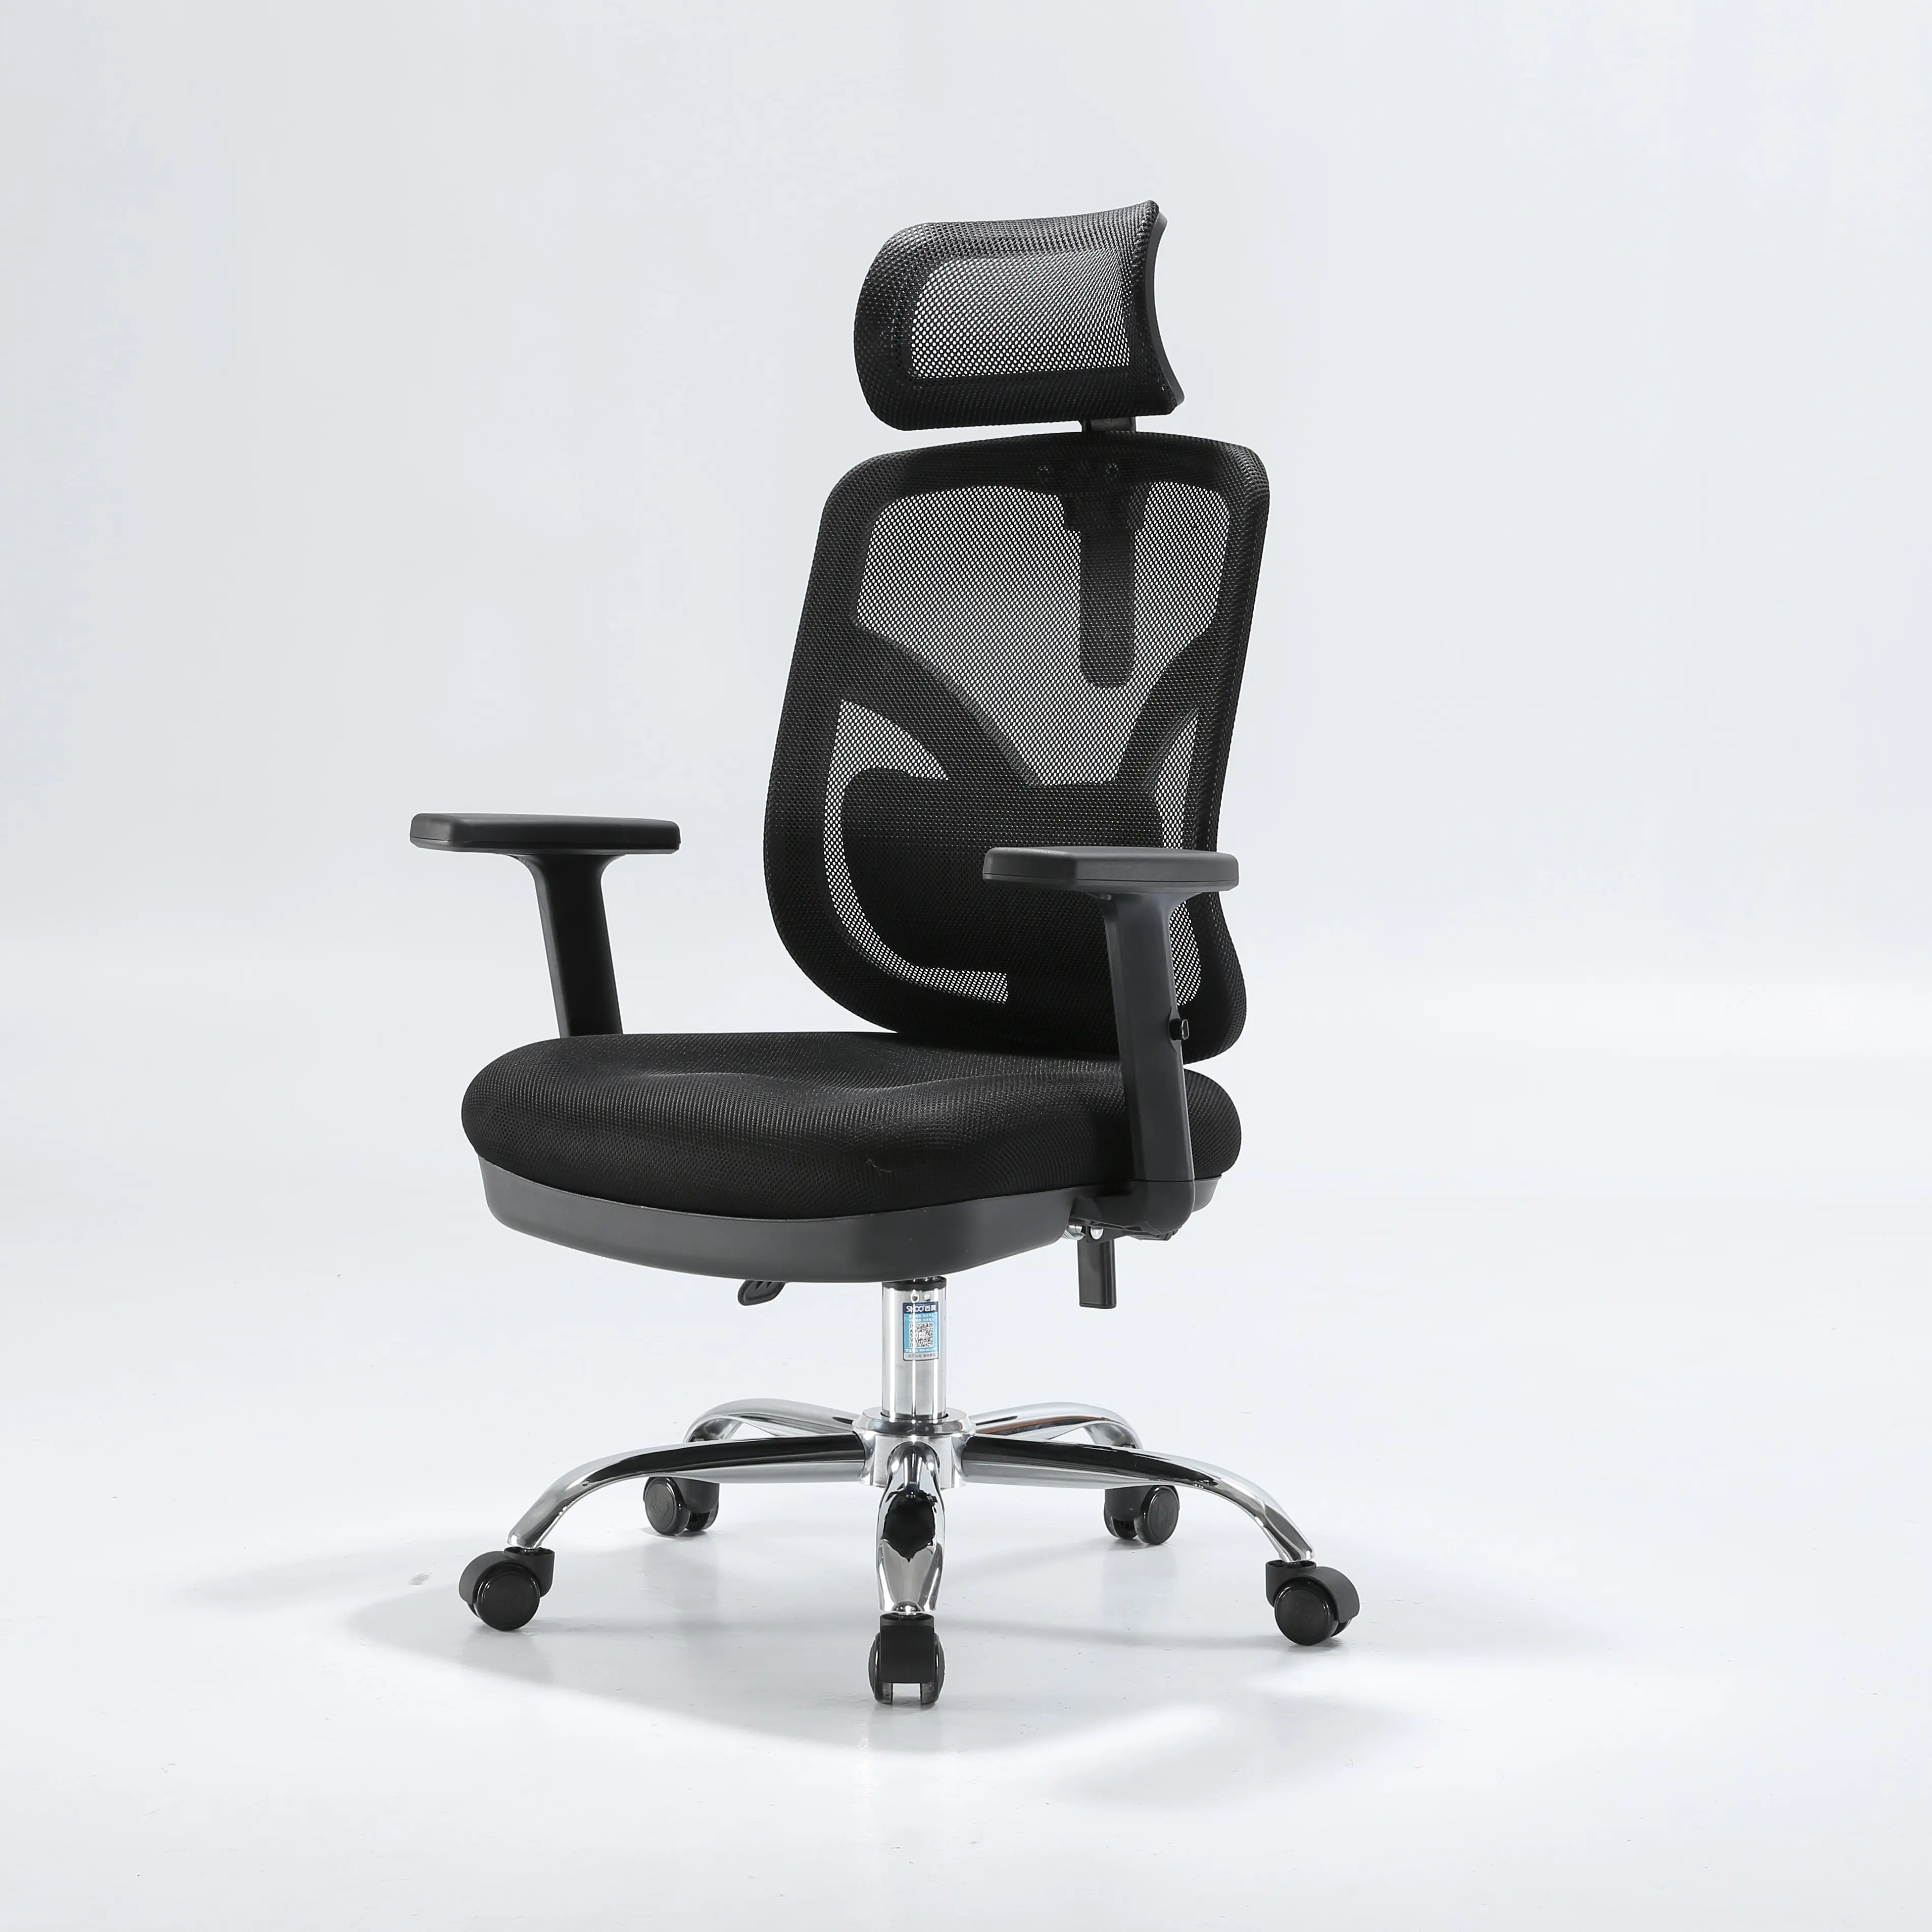 Silla de oficina ergonómica de metal, sillón reclinable giratorio de alta calidad, color gris, con certificado bimfa